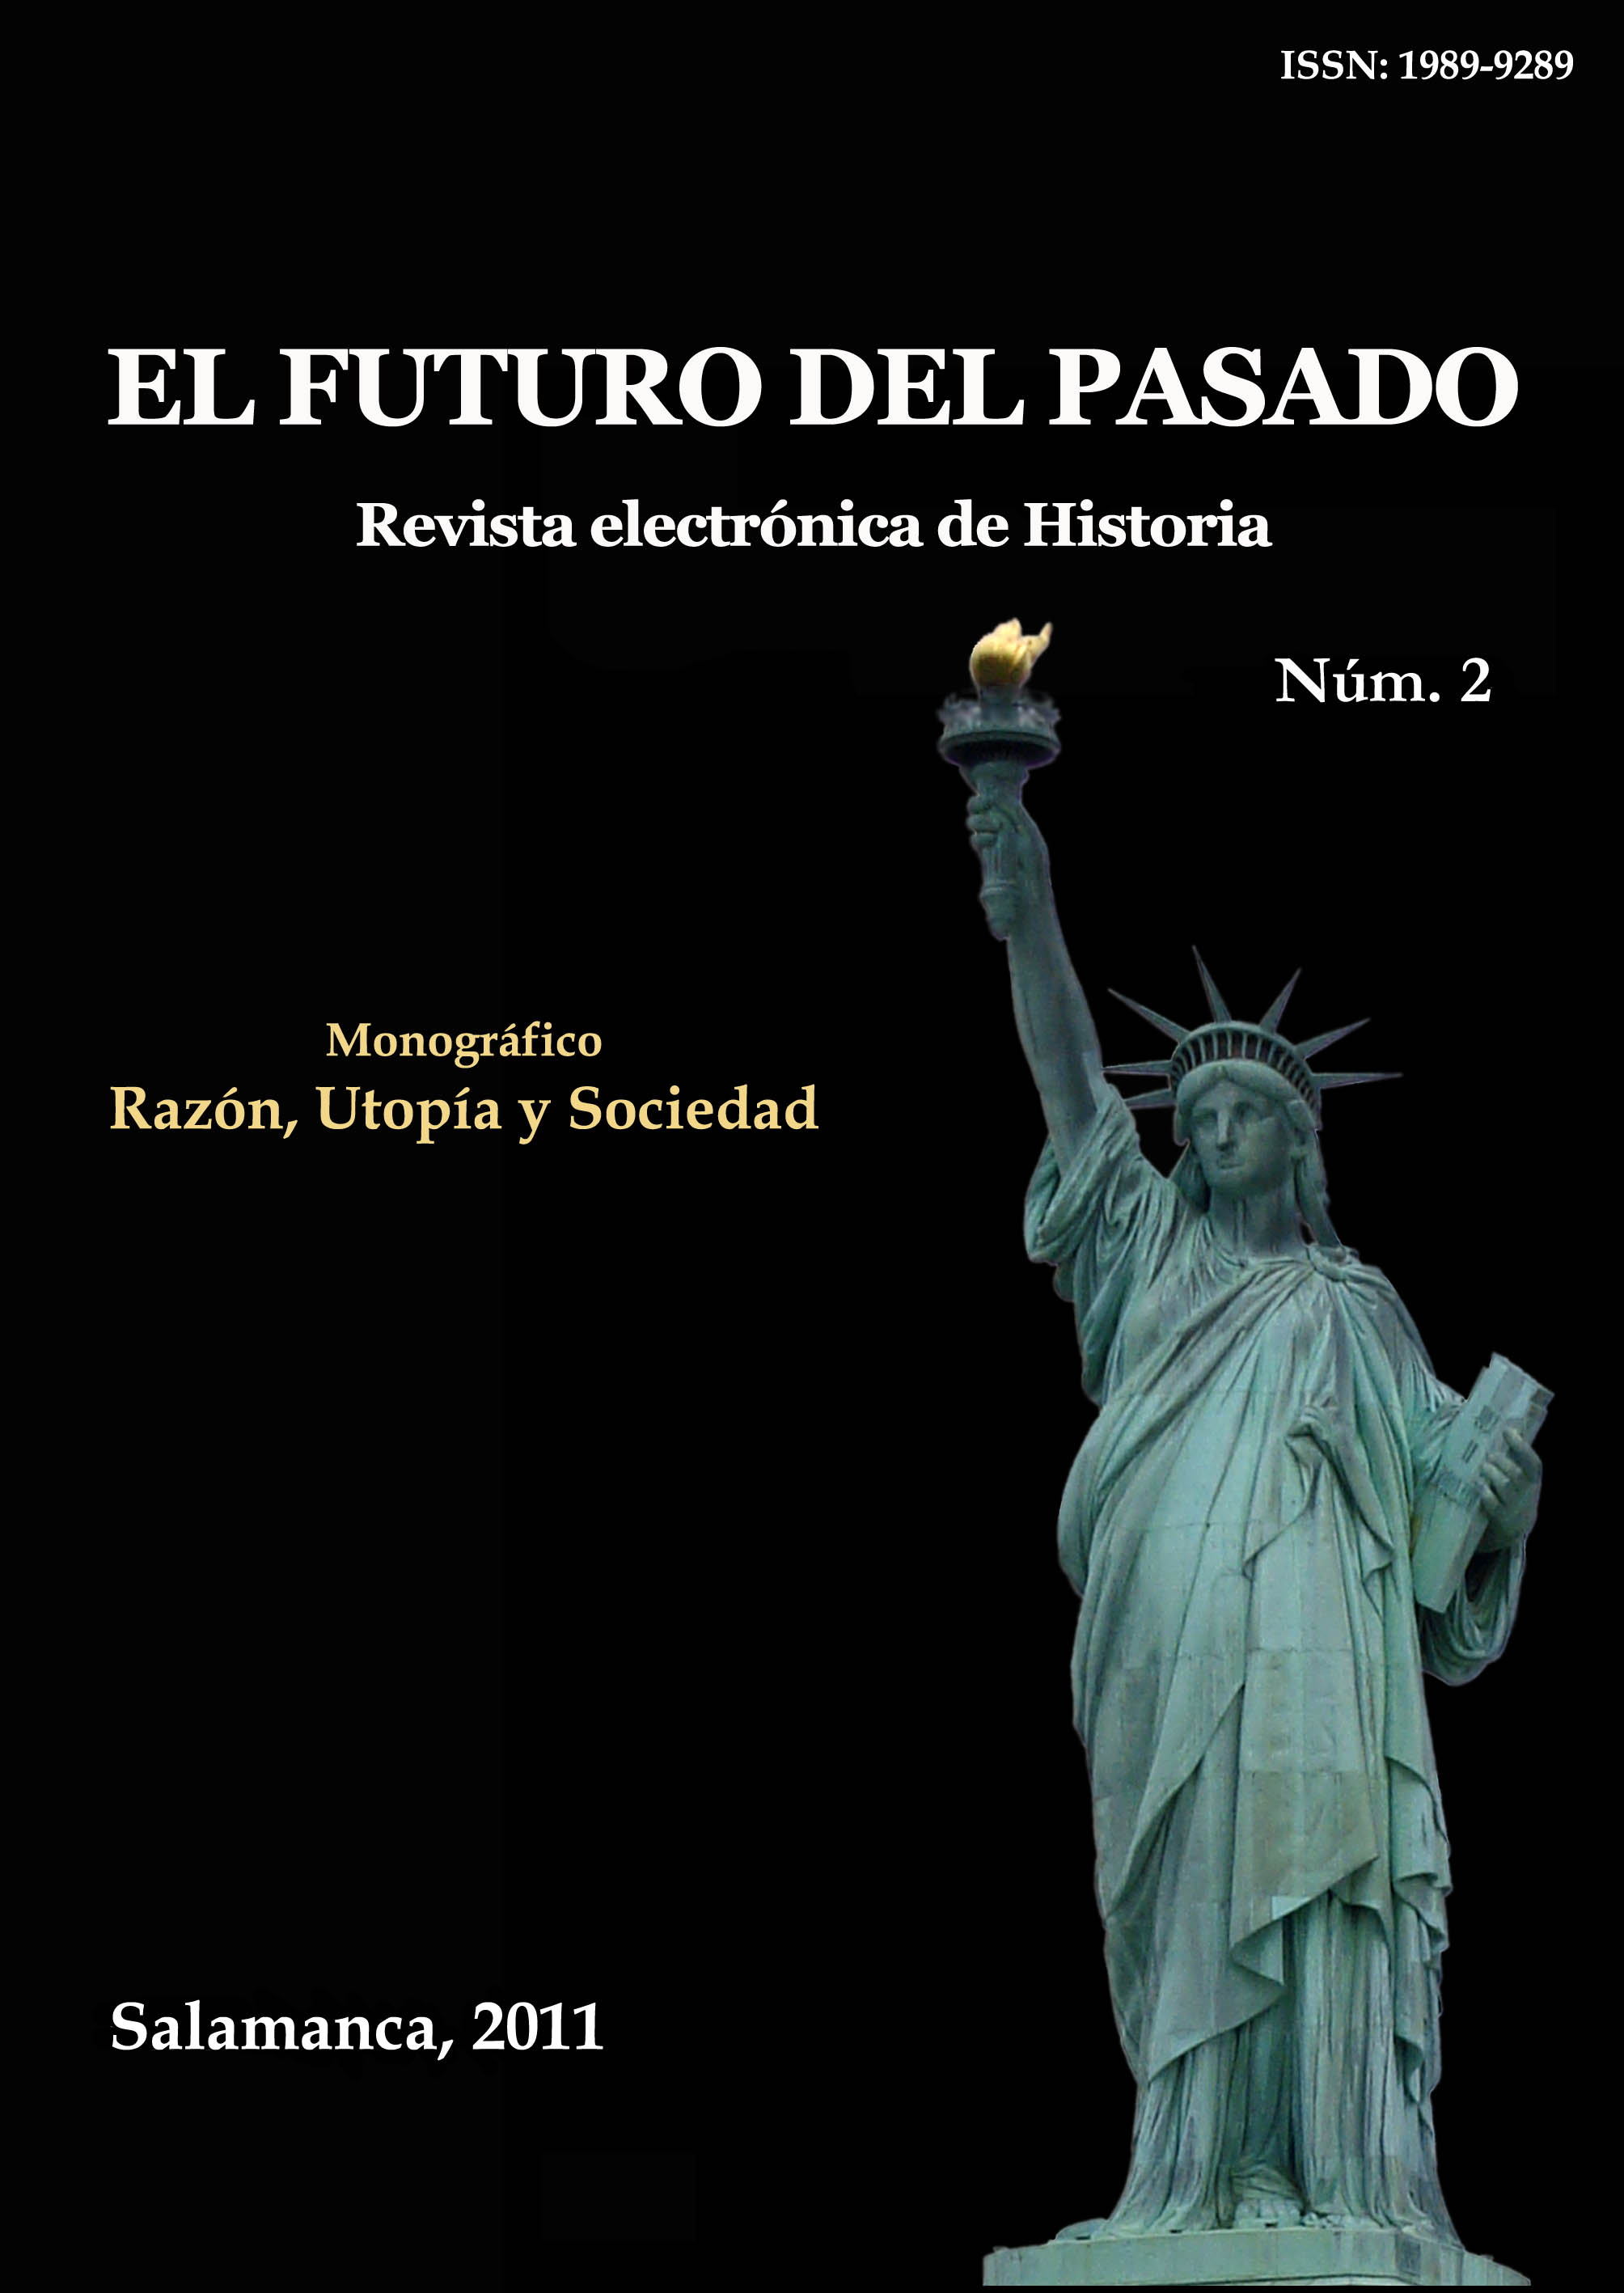                         Ver Vol. 2 (2011): Razón, Utopía y Sociedad
                    